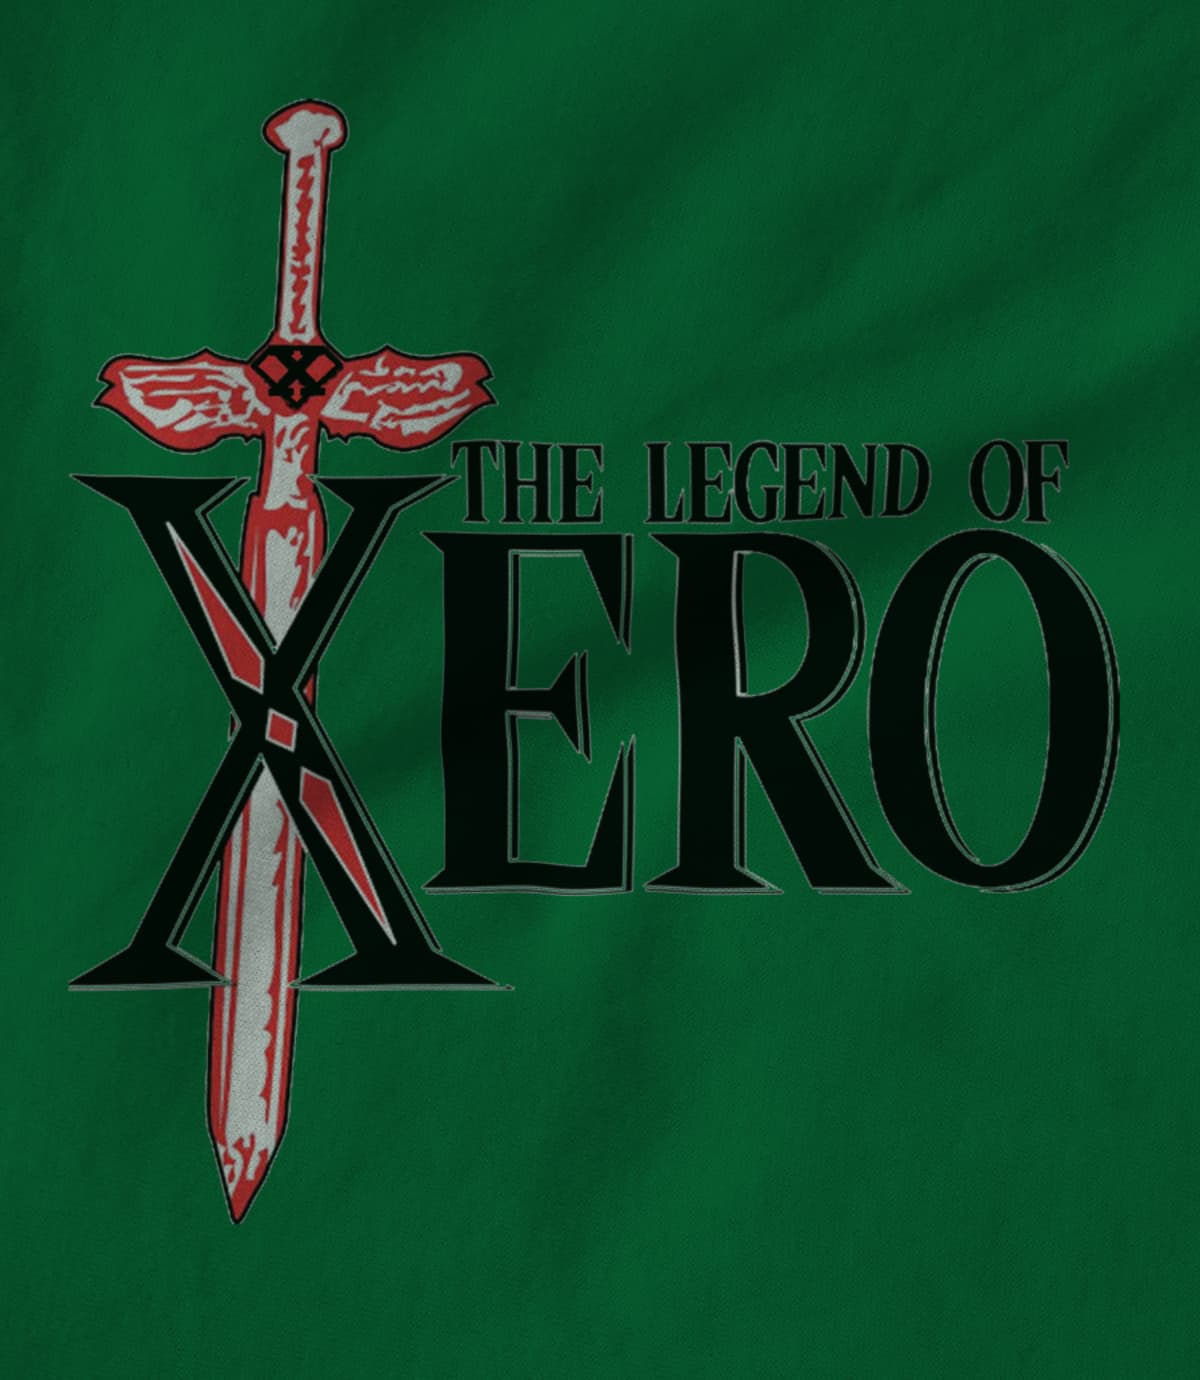 The Legend of XERO